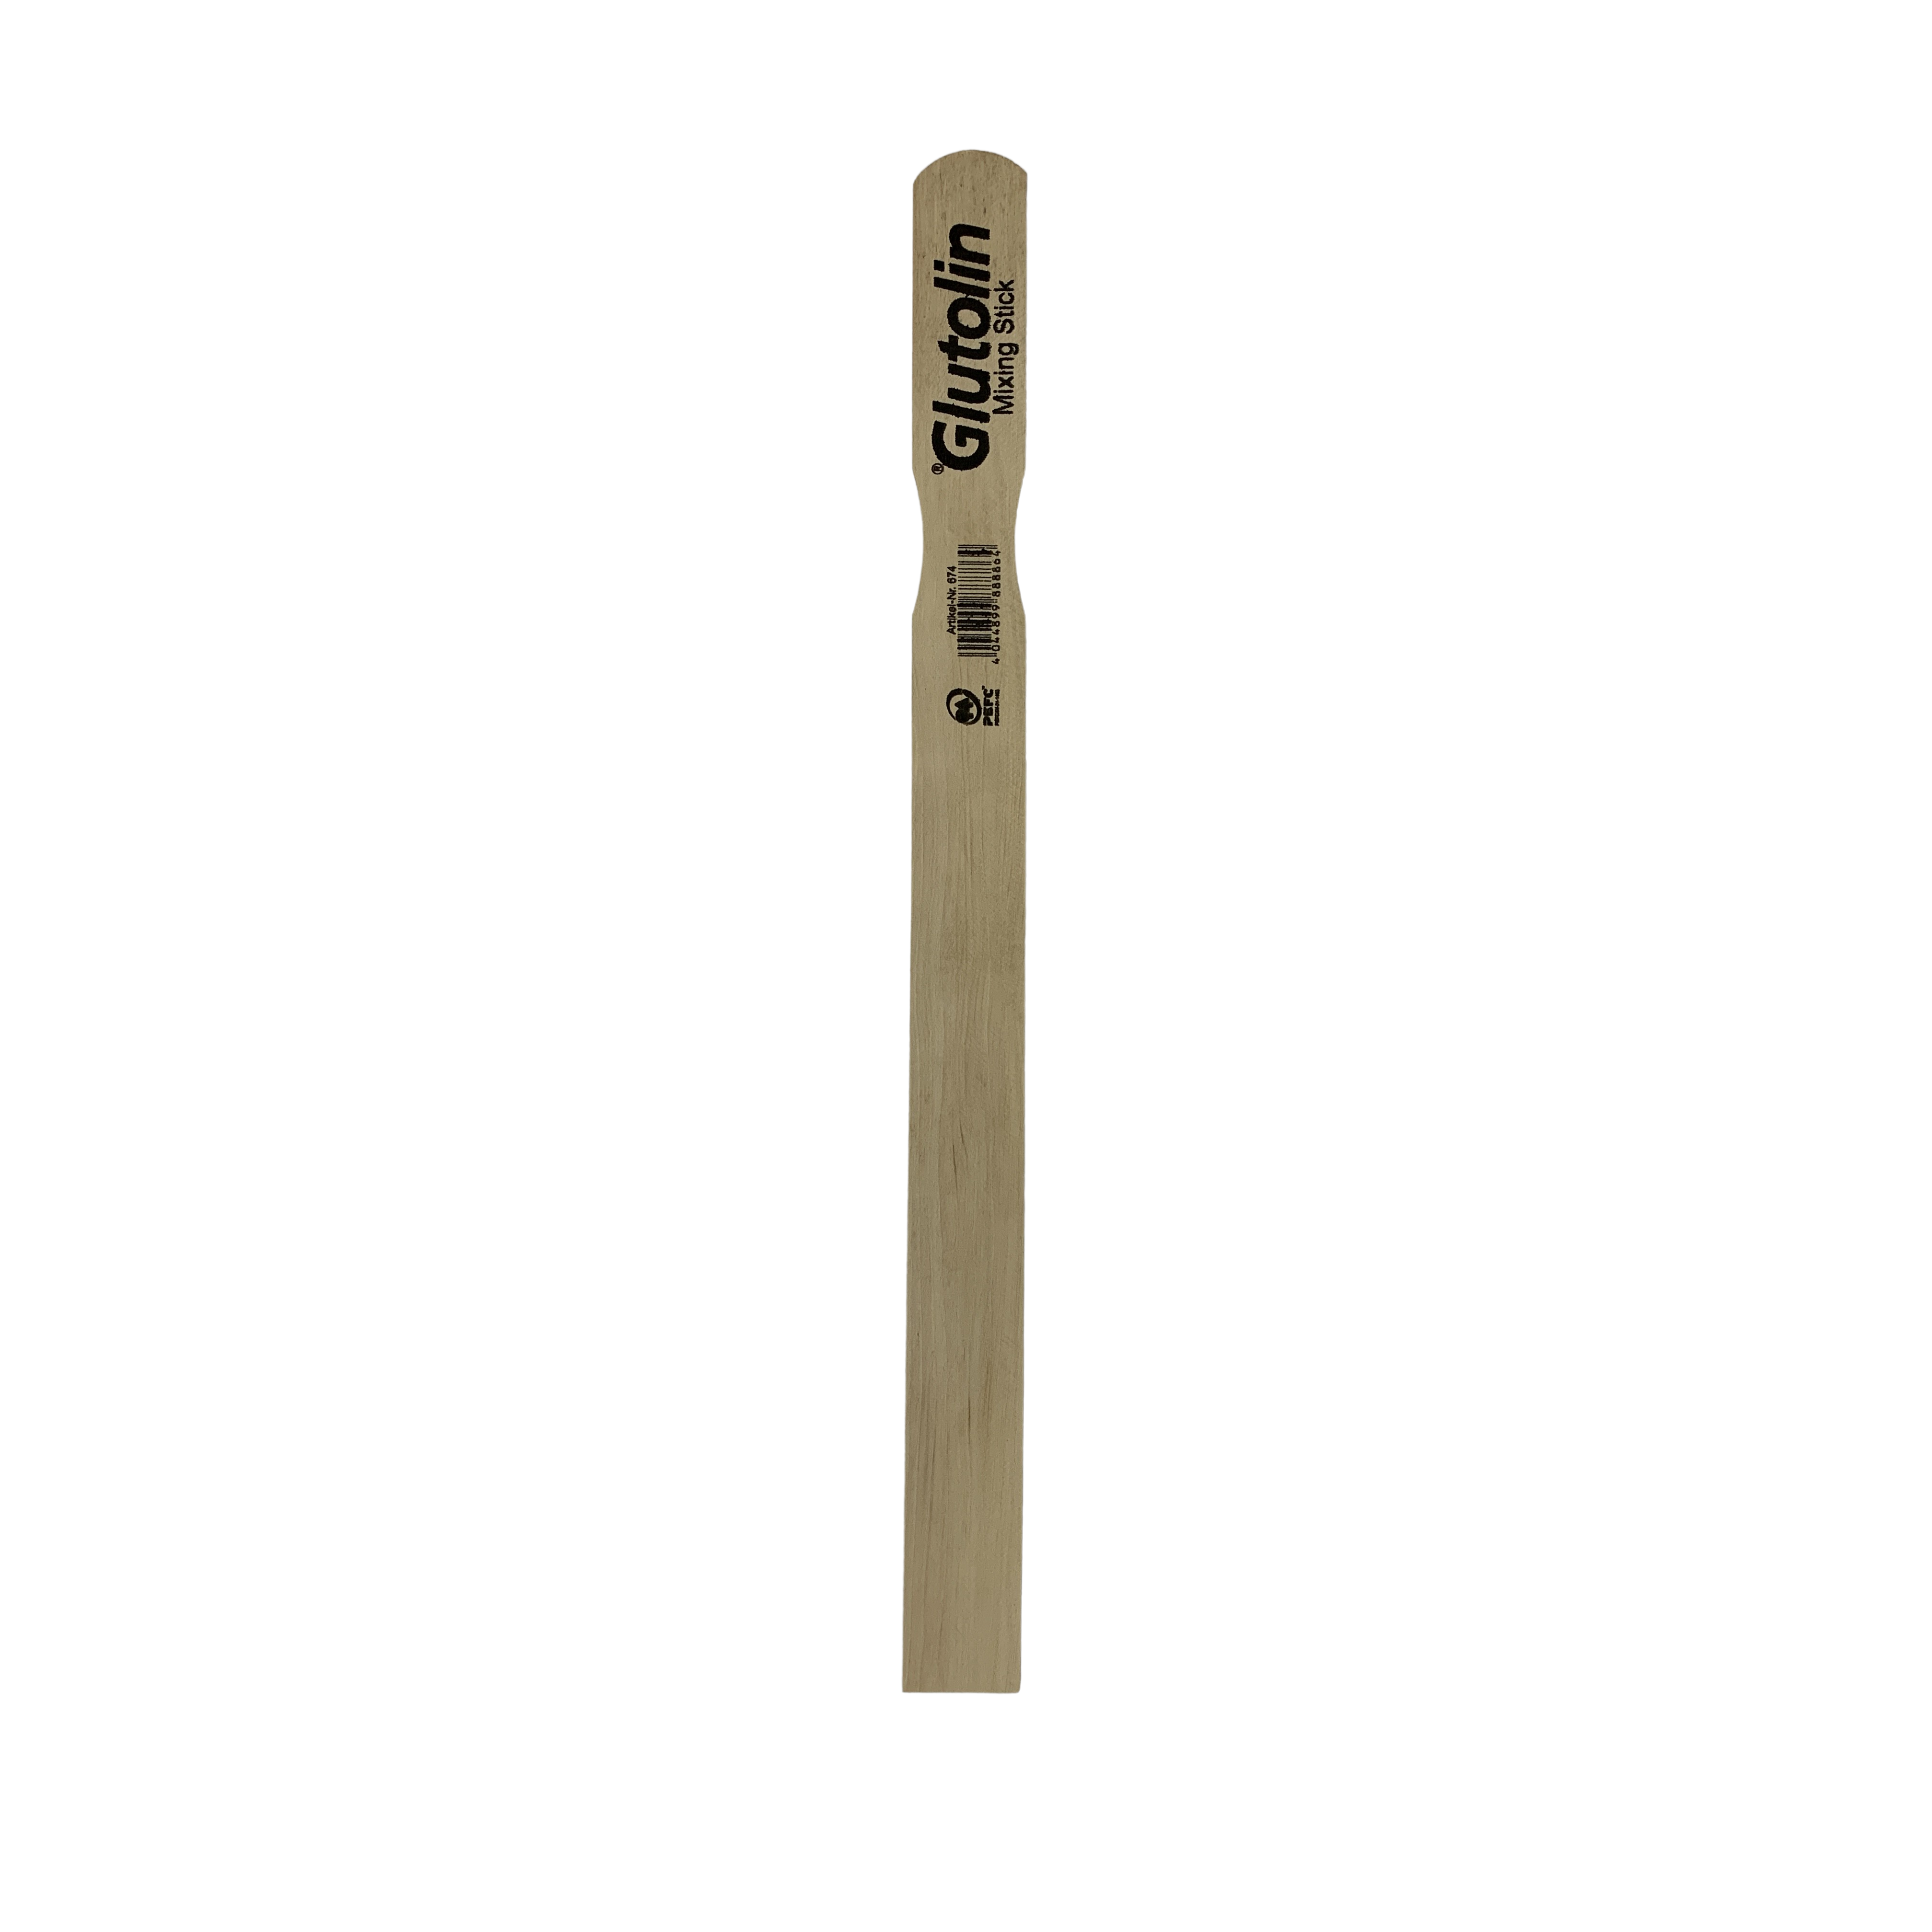 Glutofill Wooden Stirring Stick 450mm